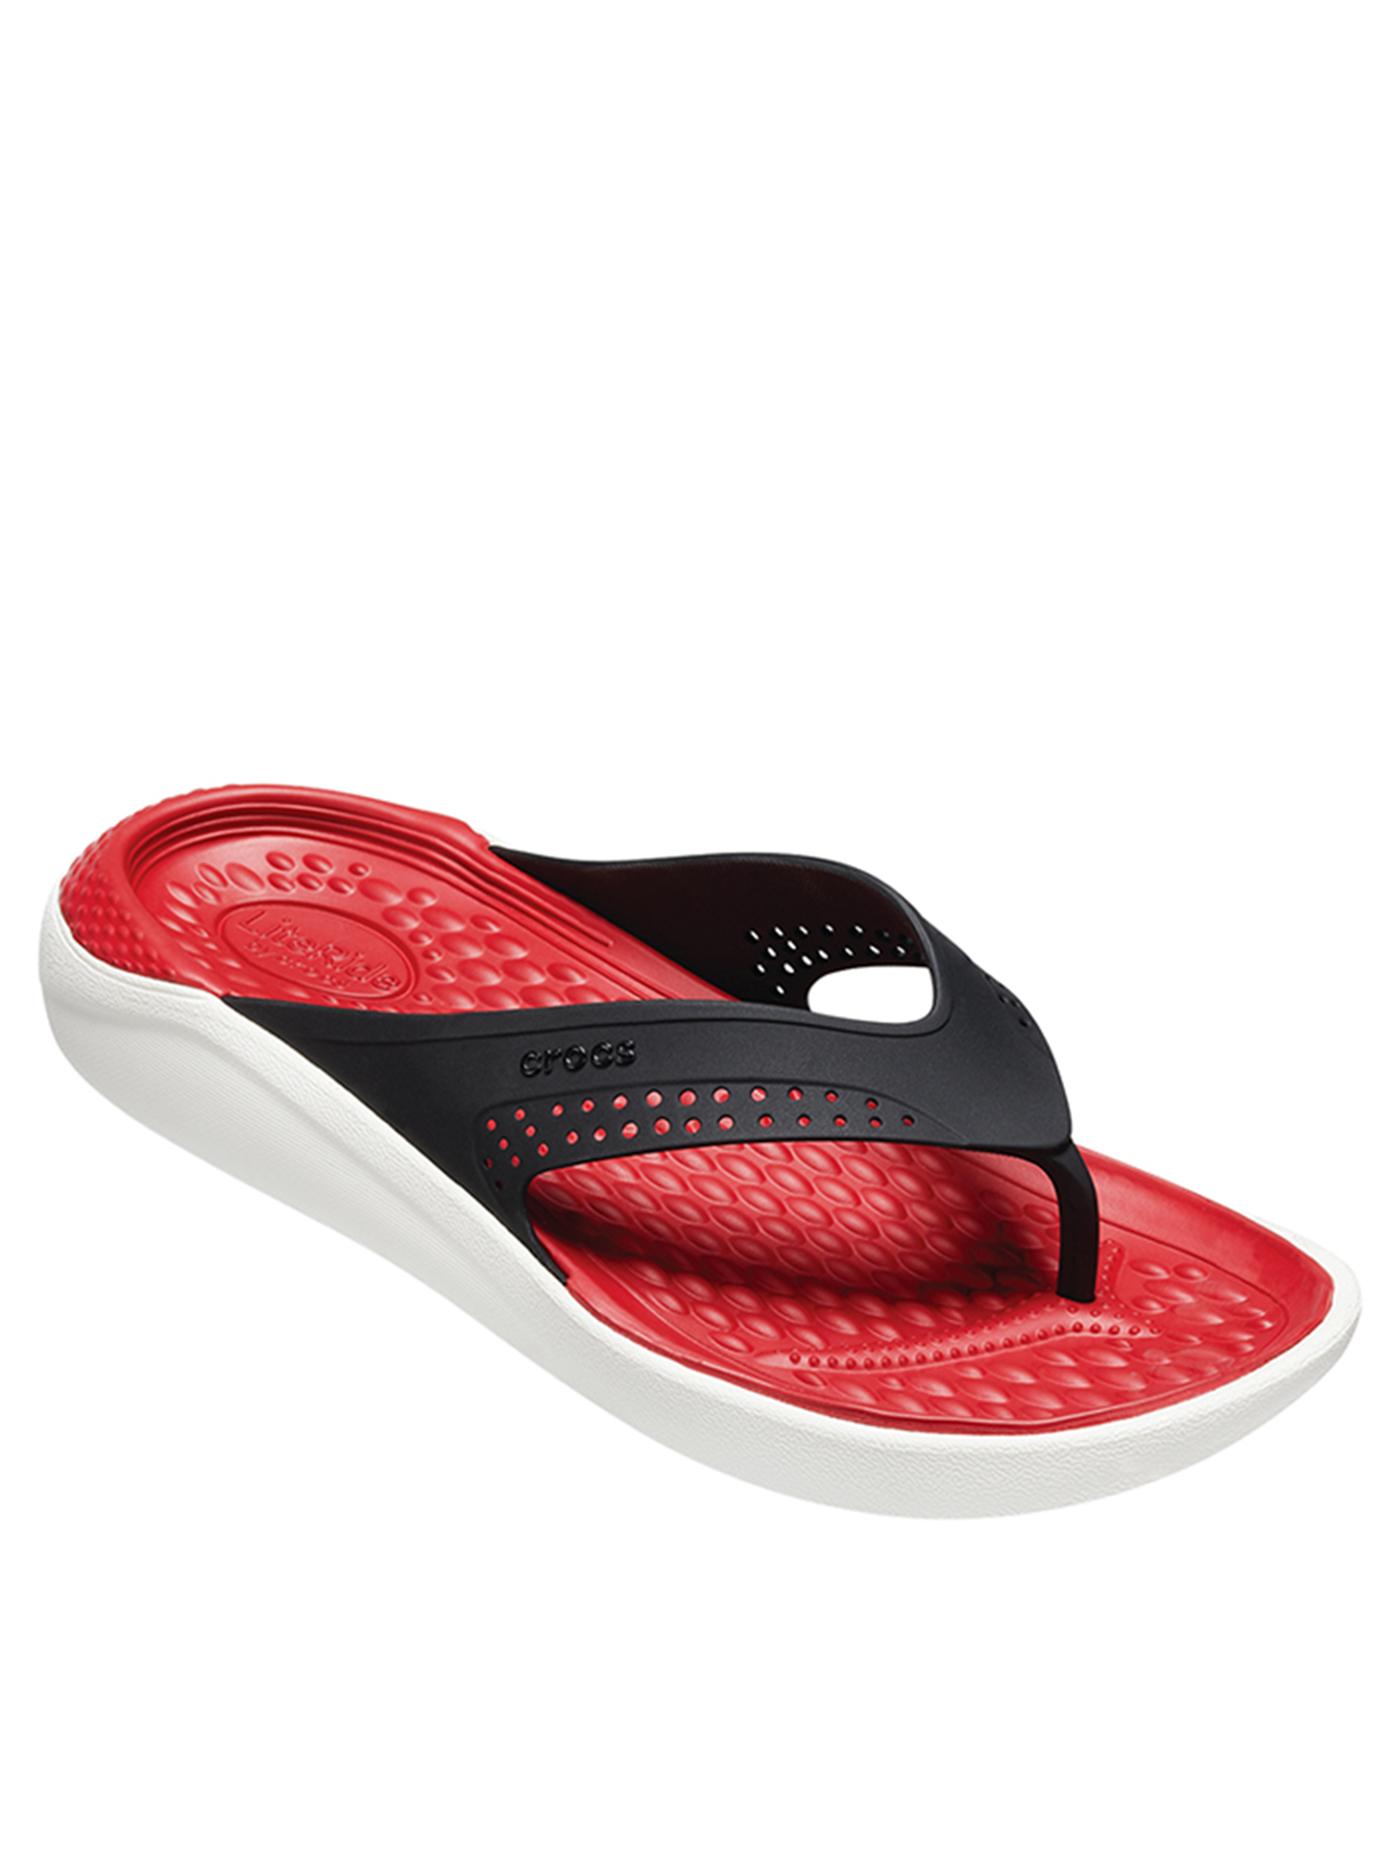 CROCS รองเท้าแตะสำหรับผู้ใหญ่ รุ่น Literide Flip ไซส์ M12 สีแดง-ขาว